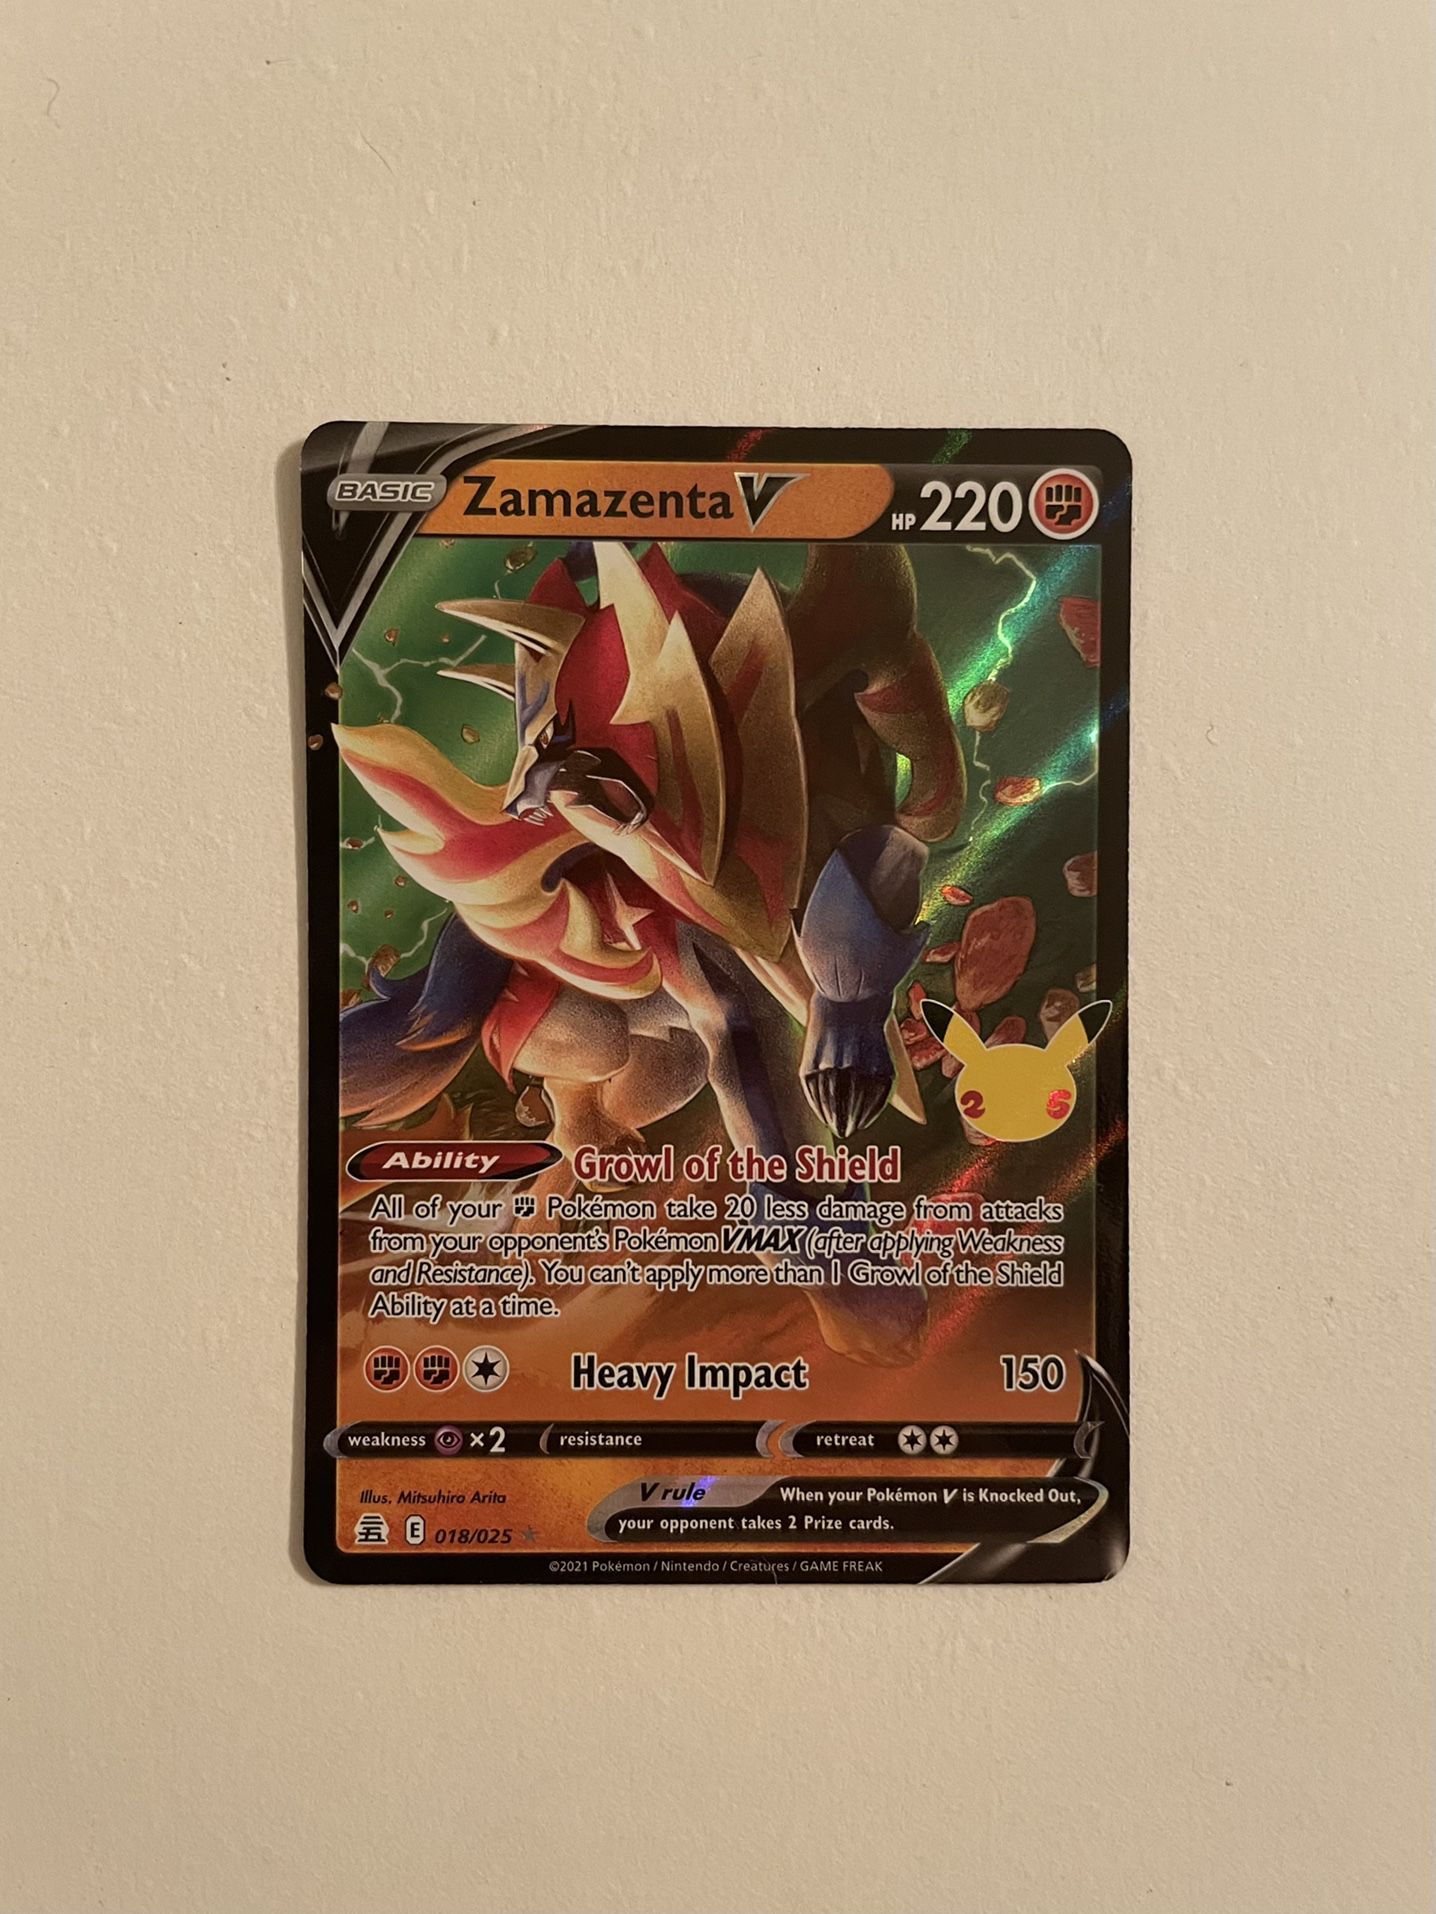 Zamazenta V - Celebrations Pokémon card 018/025